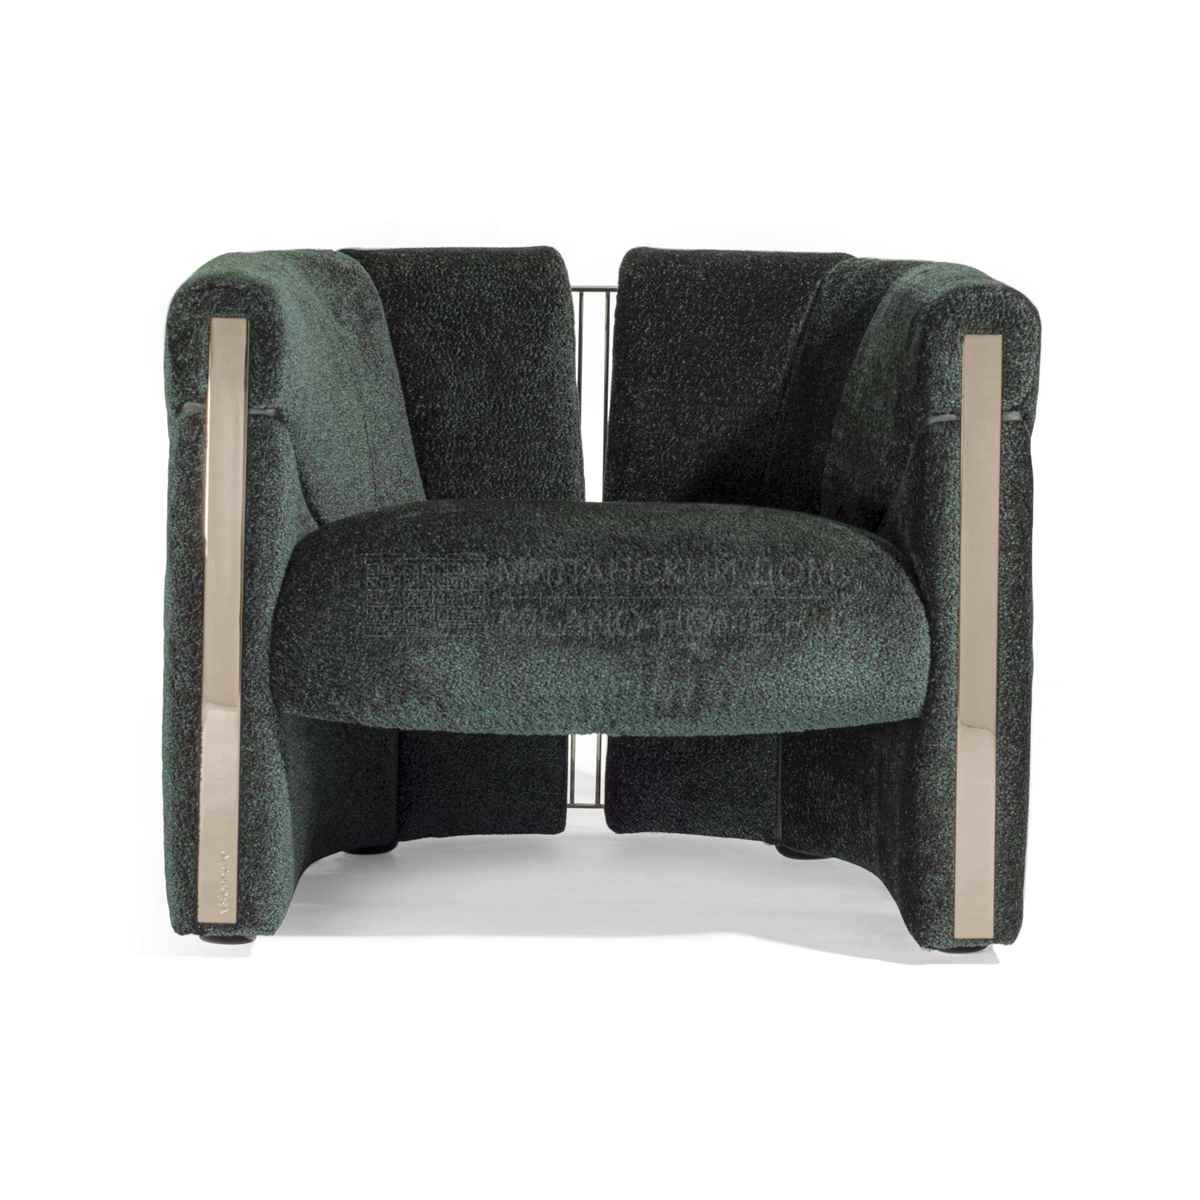 Круглое кресло Petra armchair из Италии фабрики IPE CAVALLI VISIONNAIRE